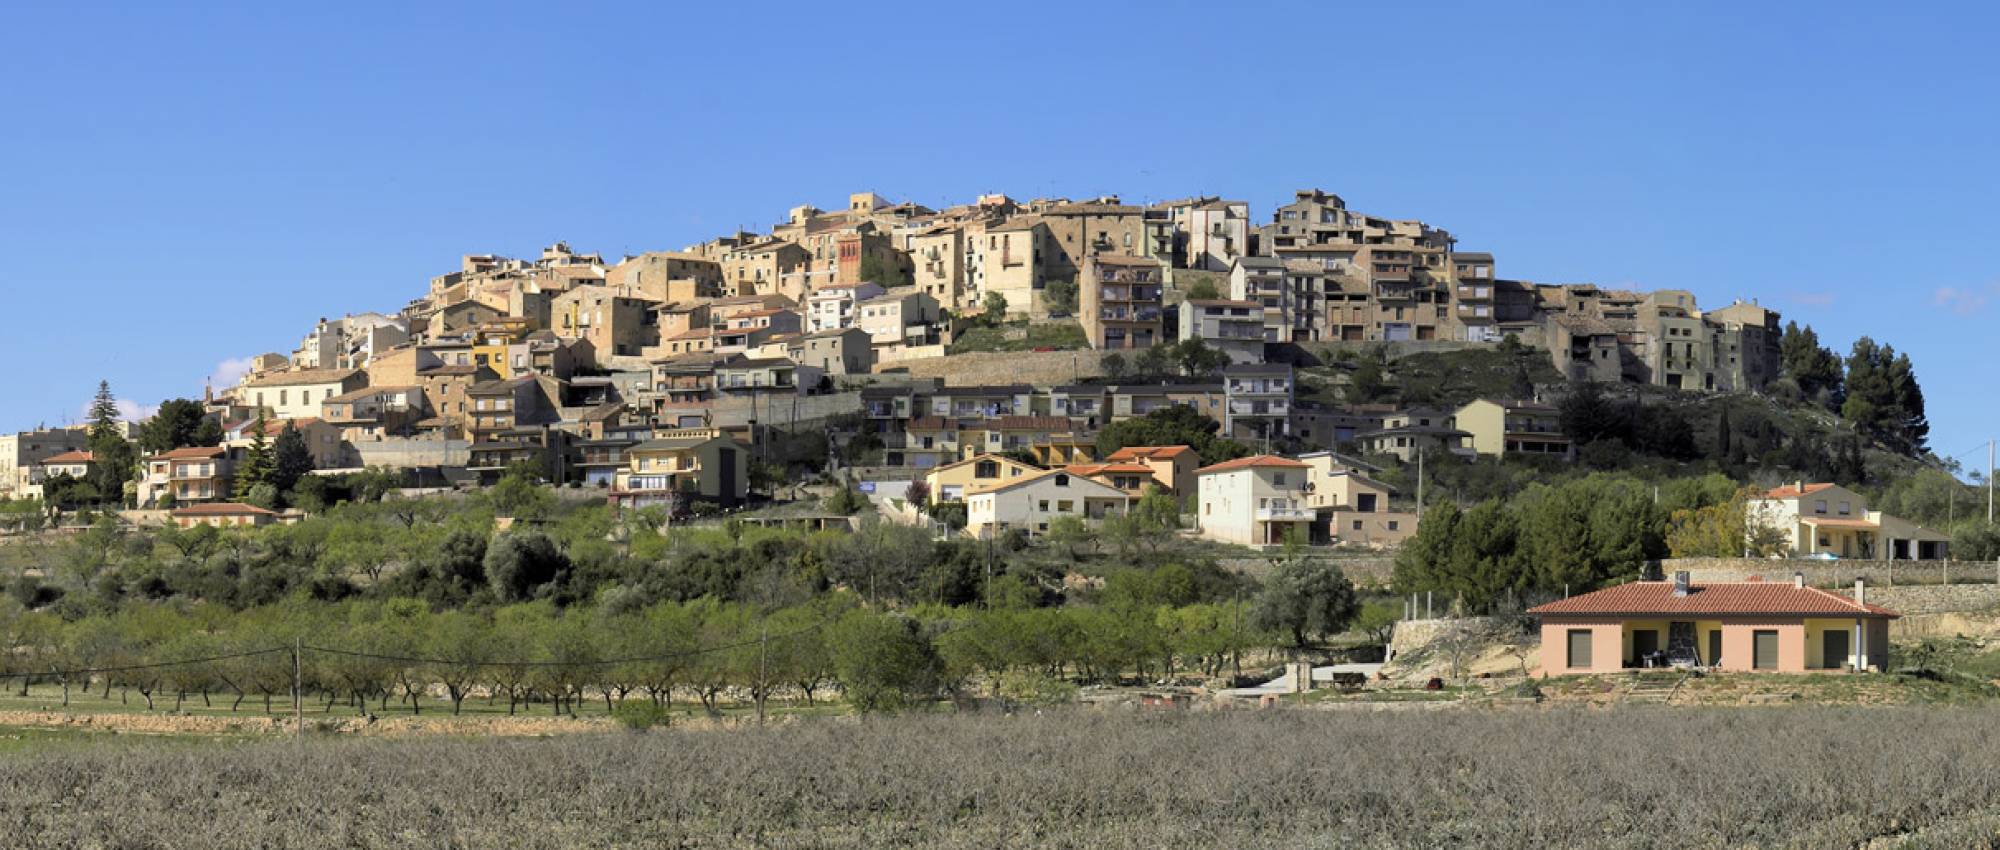 Vista de Horta de Sant Joan. CC BY-SA 3.0 -  Hans Hillewaert / Wikimedia Commons